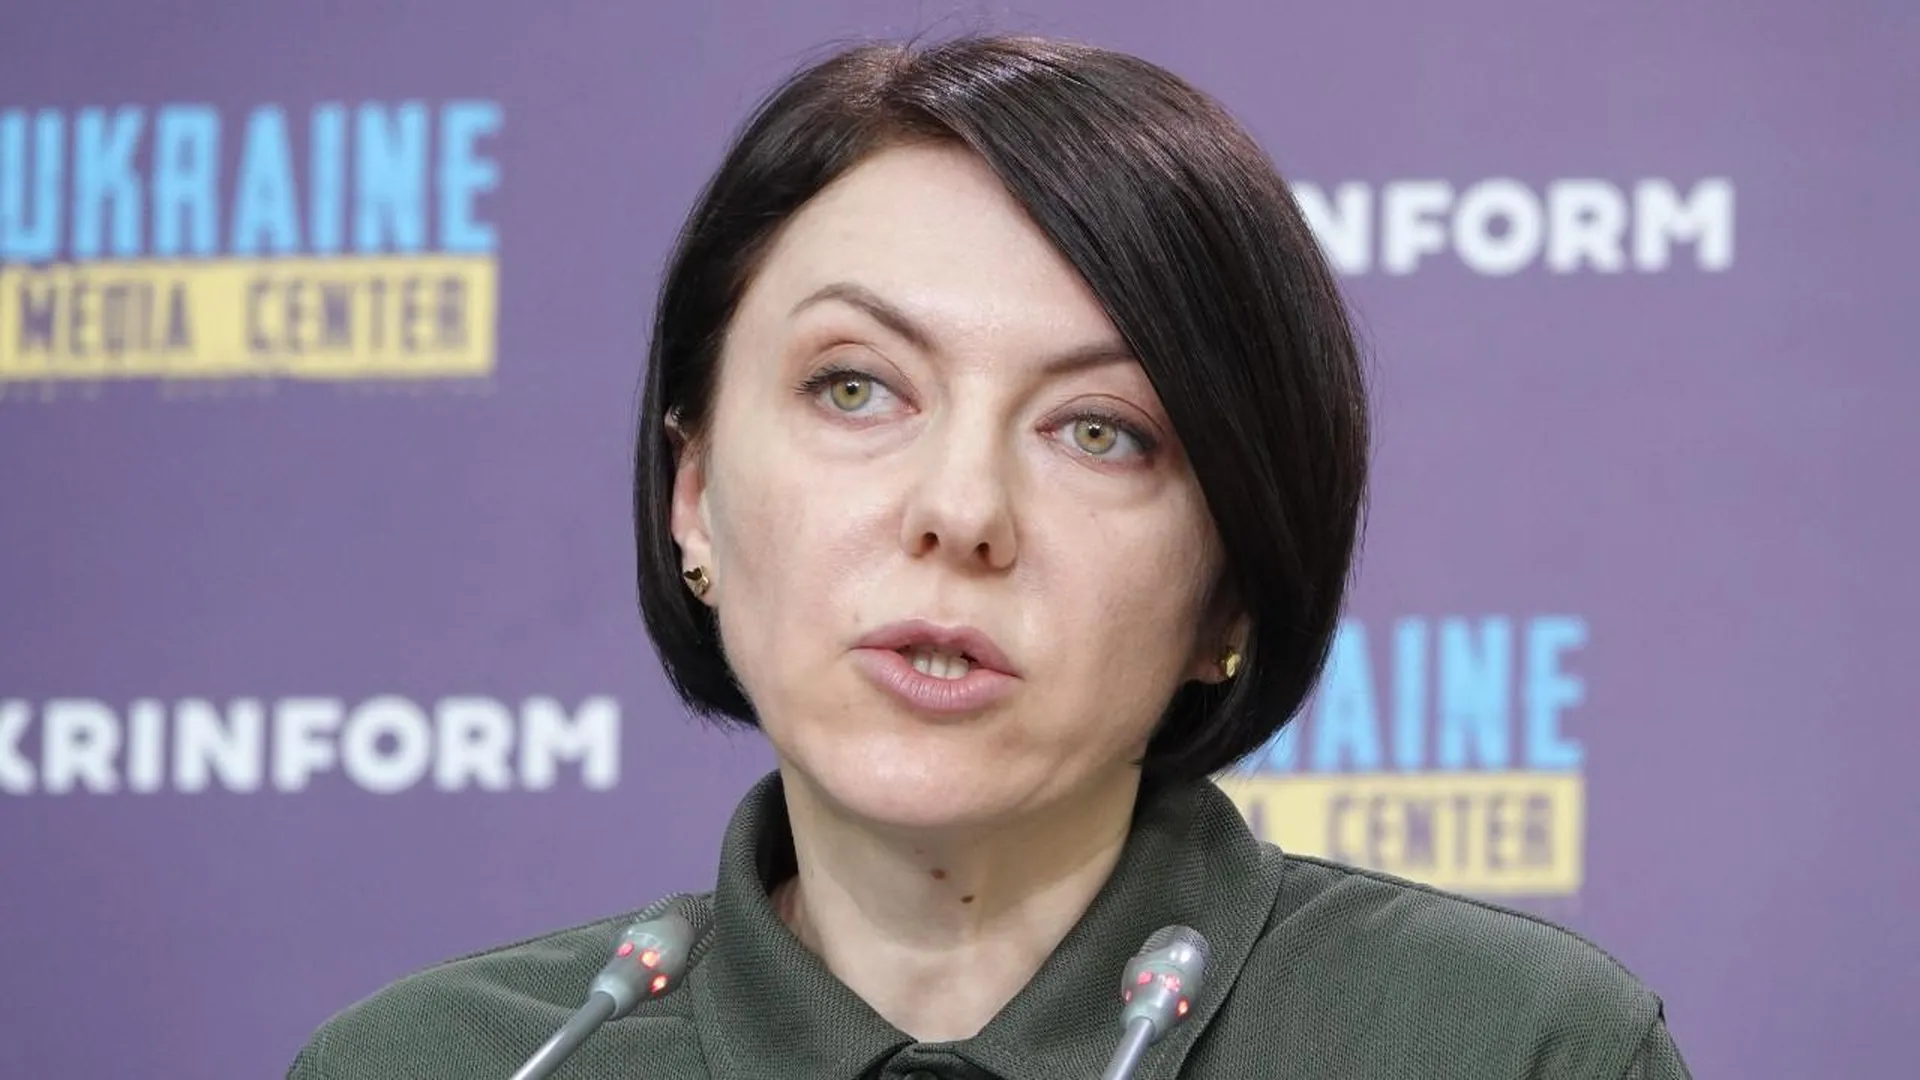 Кабмин Украины уволил замминистра Маляр, солгавшую о «взятии» Андреевки